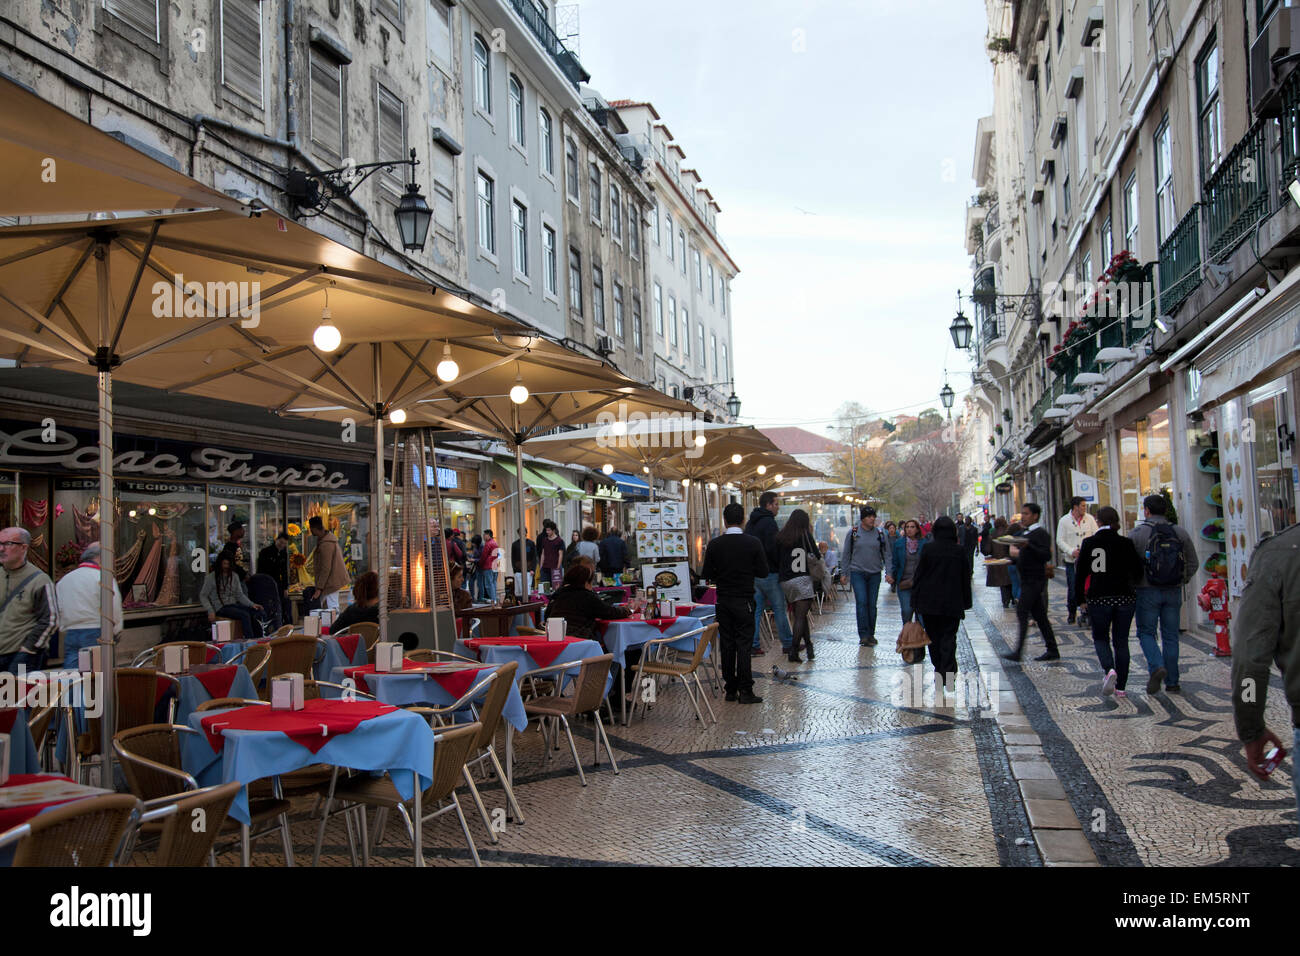 Restaurants on the Lanes of Baixa Quarter of Lisbon - Portugal Stock Photo